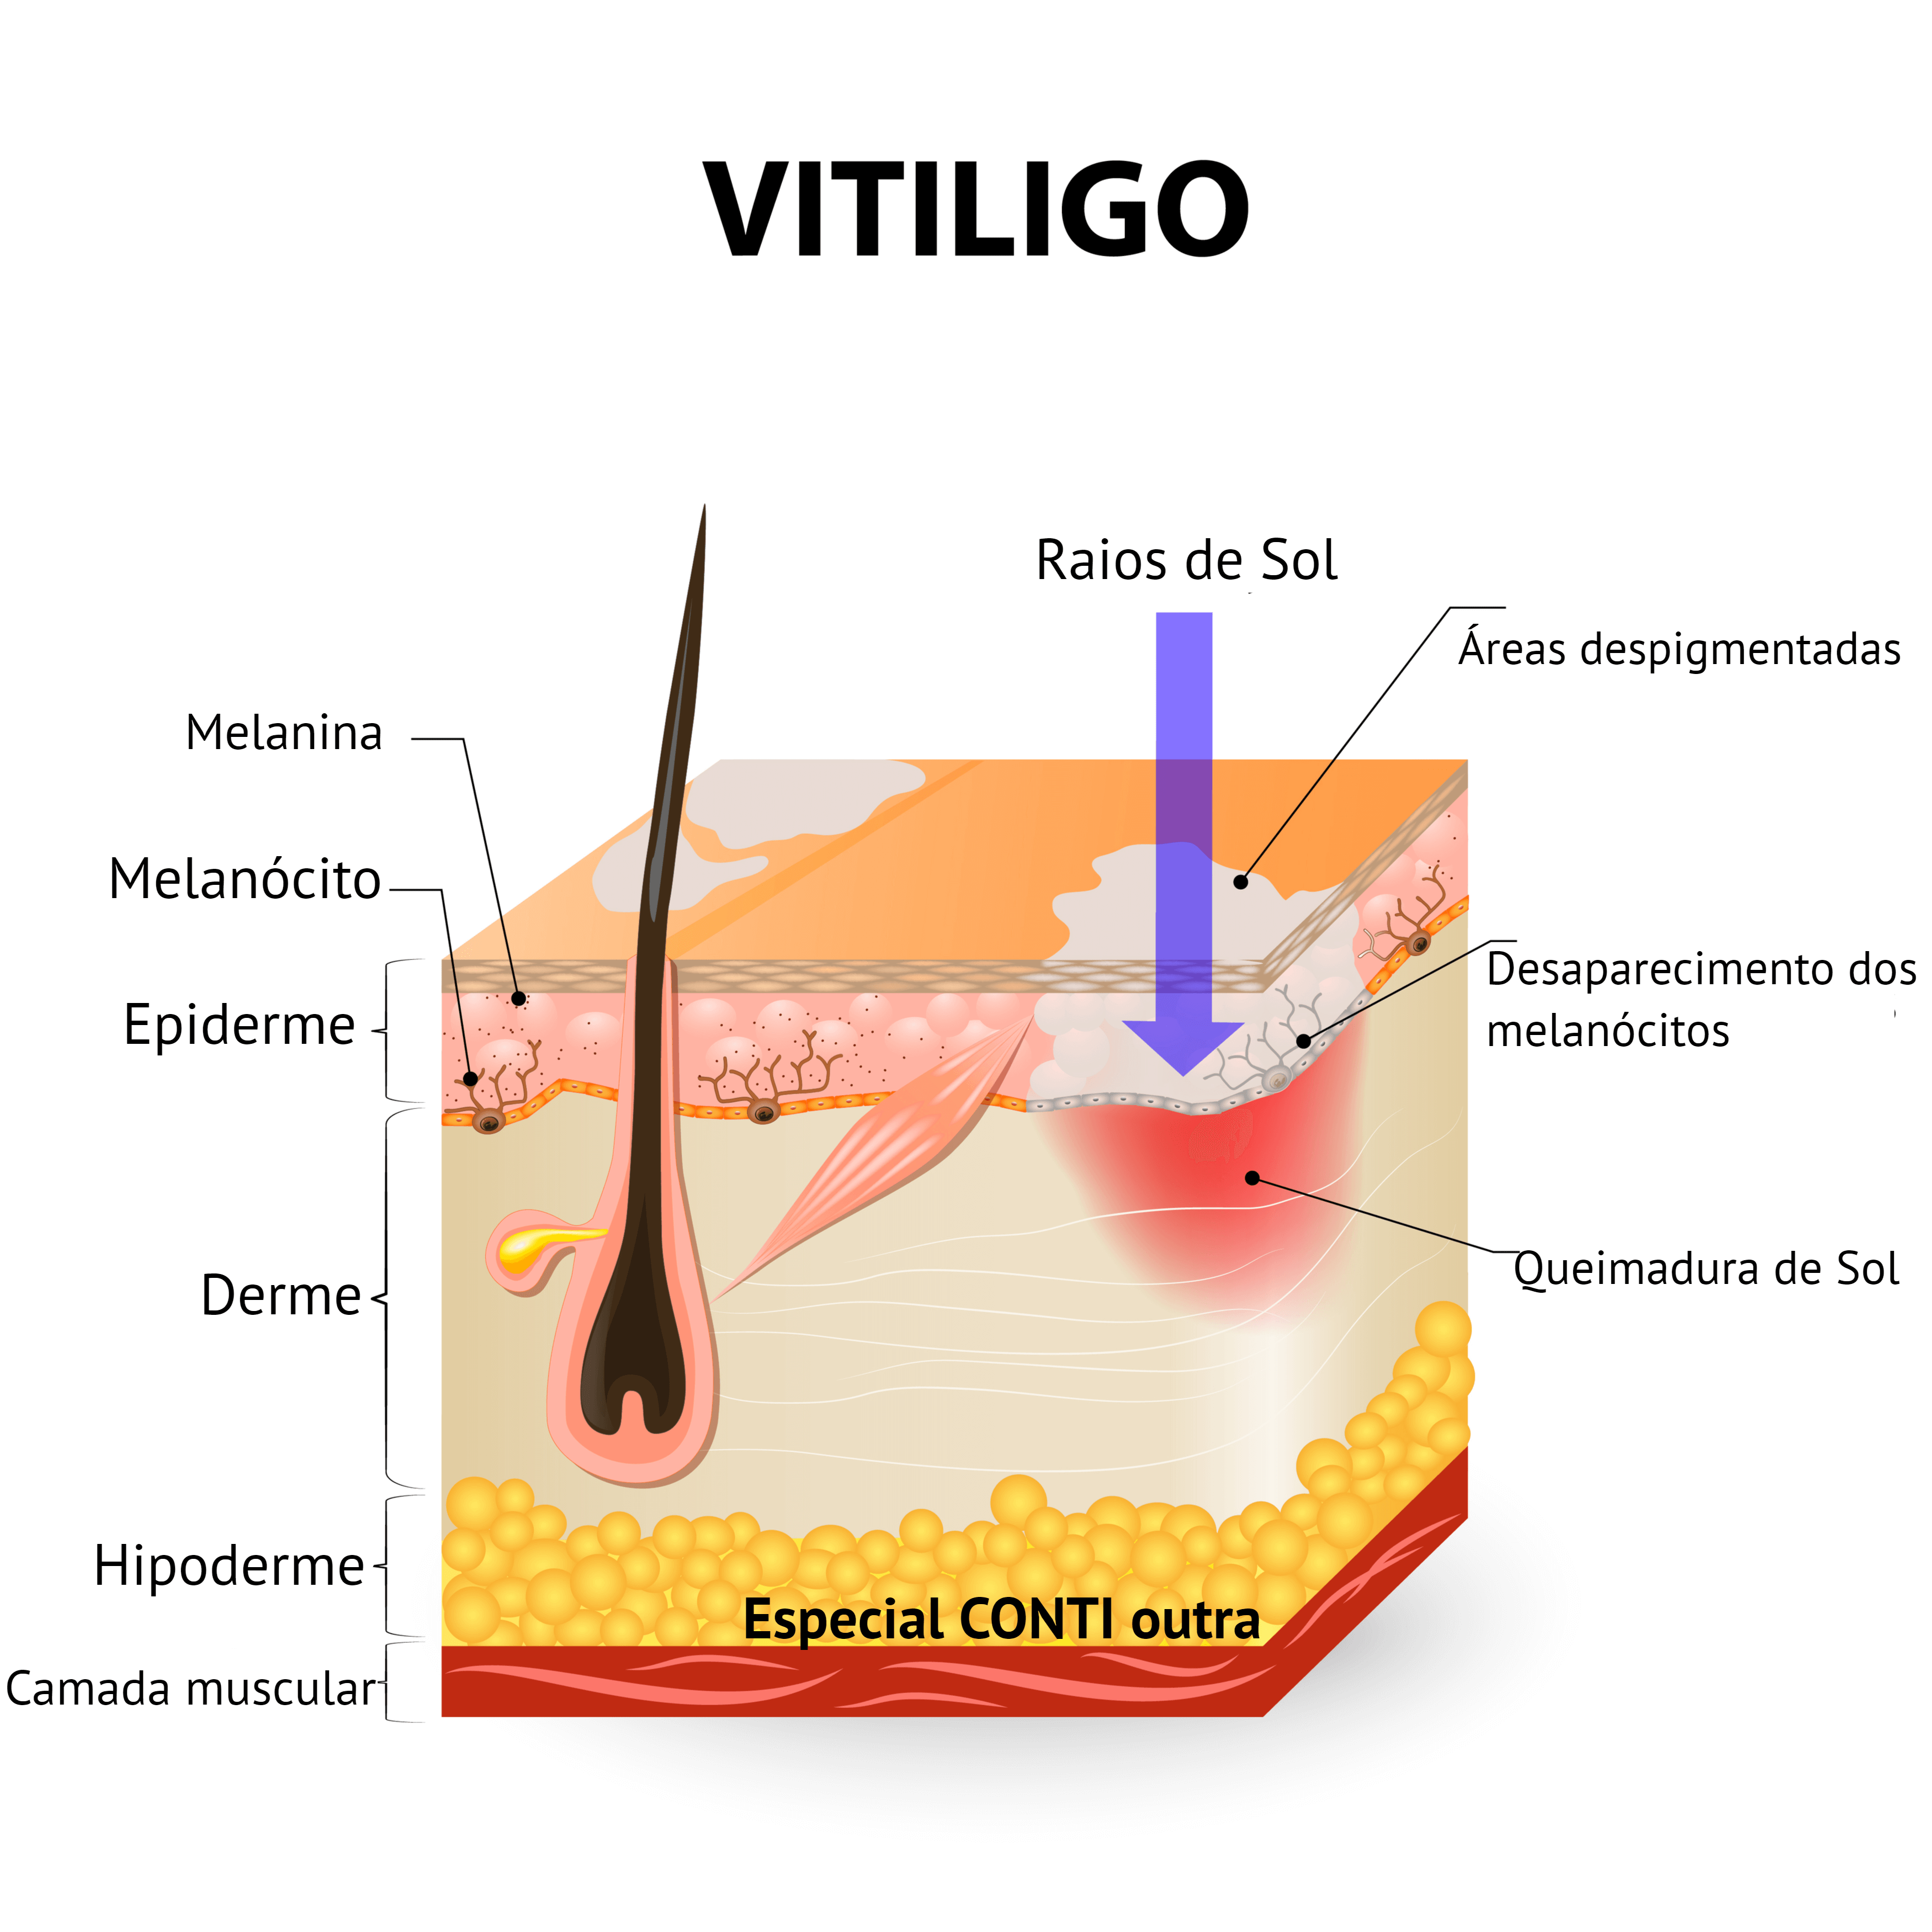 contioutra.com - Especial Vitiligo: o que sabemos da doença e do controverso tratamento cubano até o momento.